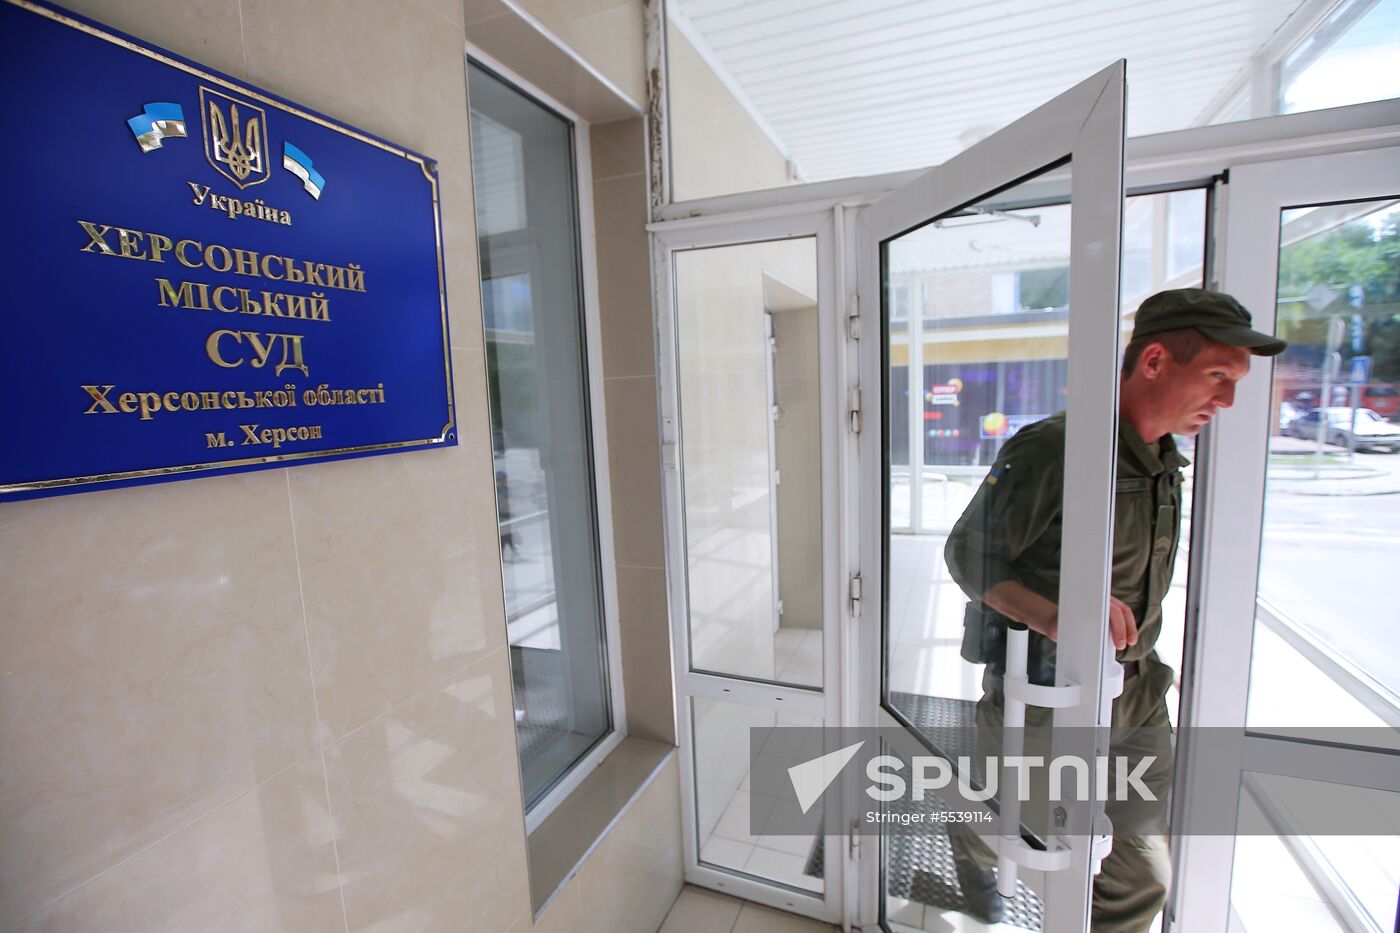 Court hearing for journalist K. Vyshinsky in Kherson